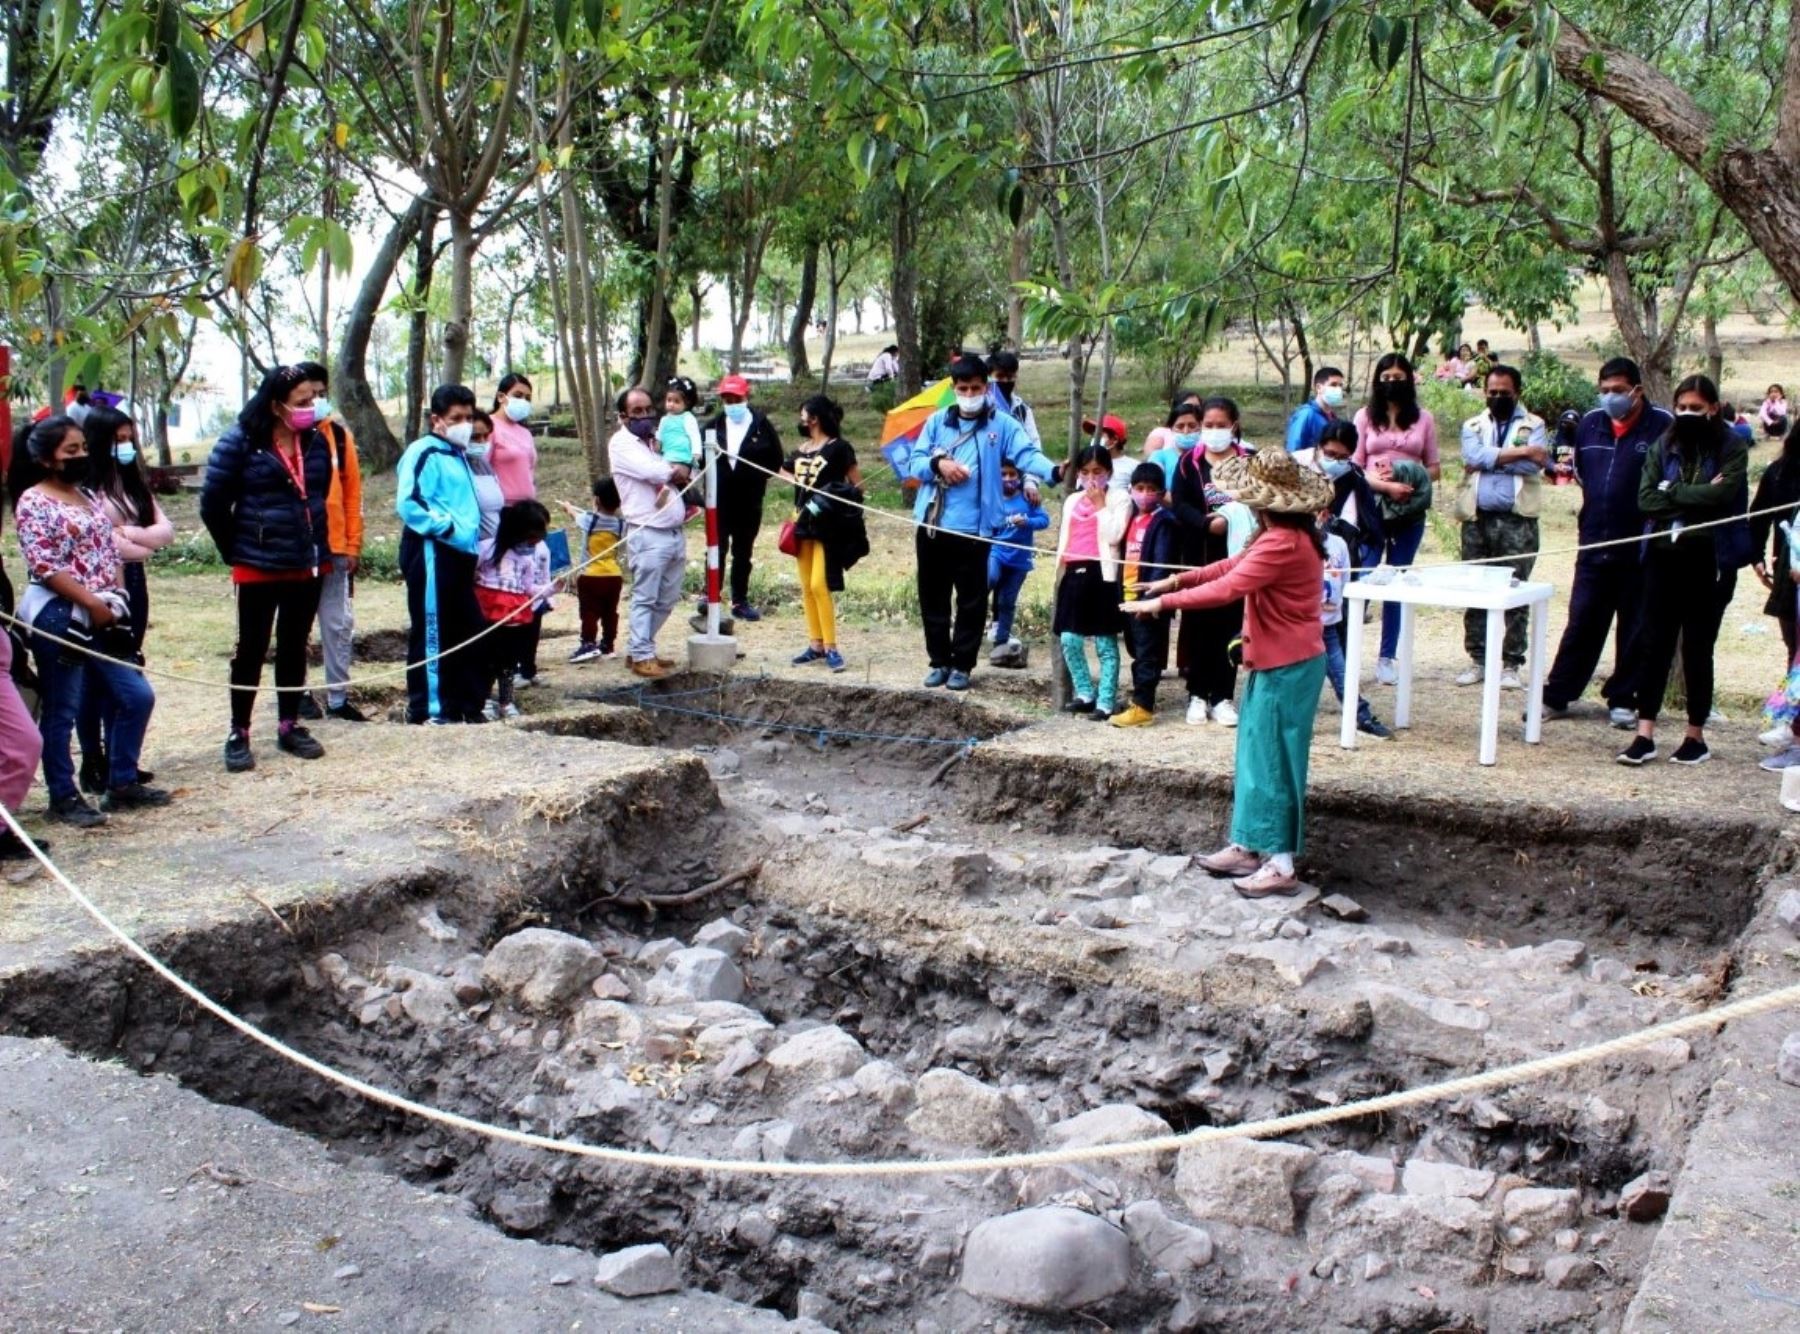 Investigación arqueológica en emblemático cerro Santa Apolonia, ubicado en la ciudad de Cajamarca, genera interés de visitantes, destaca la Dirección de Cultura de esta región. ANDINA/Difusión